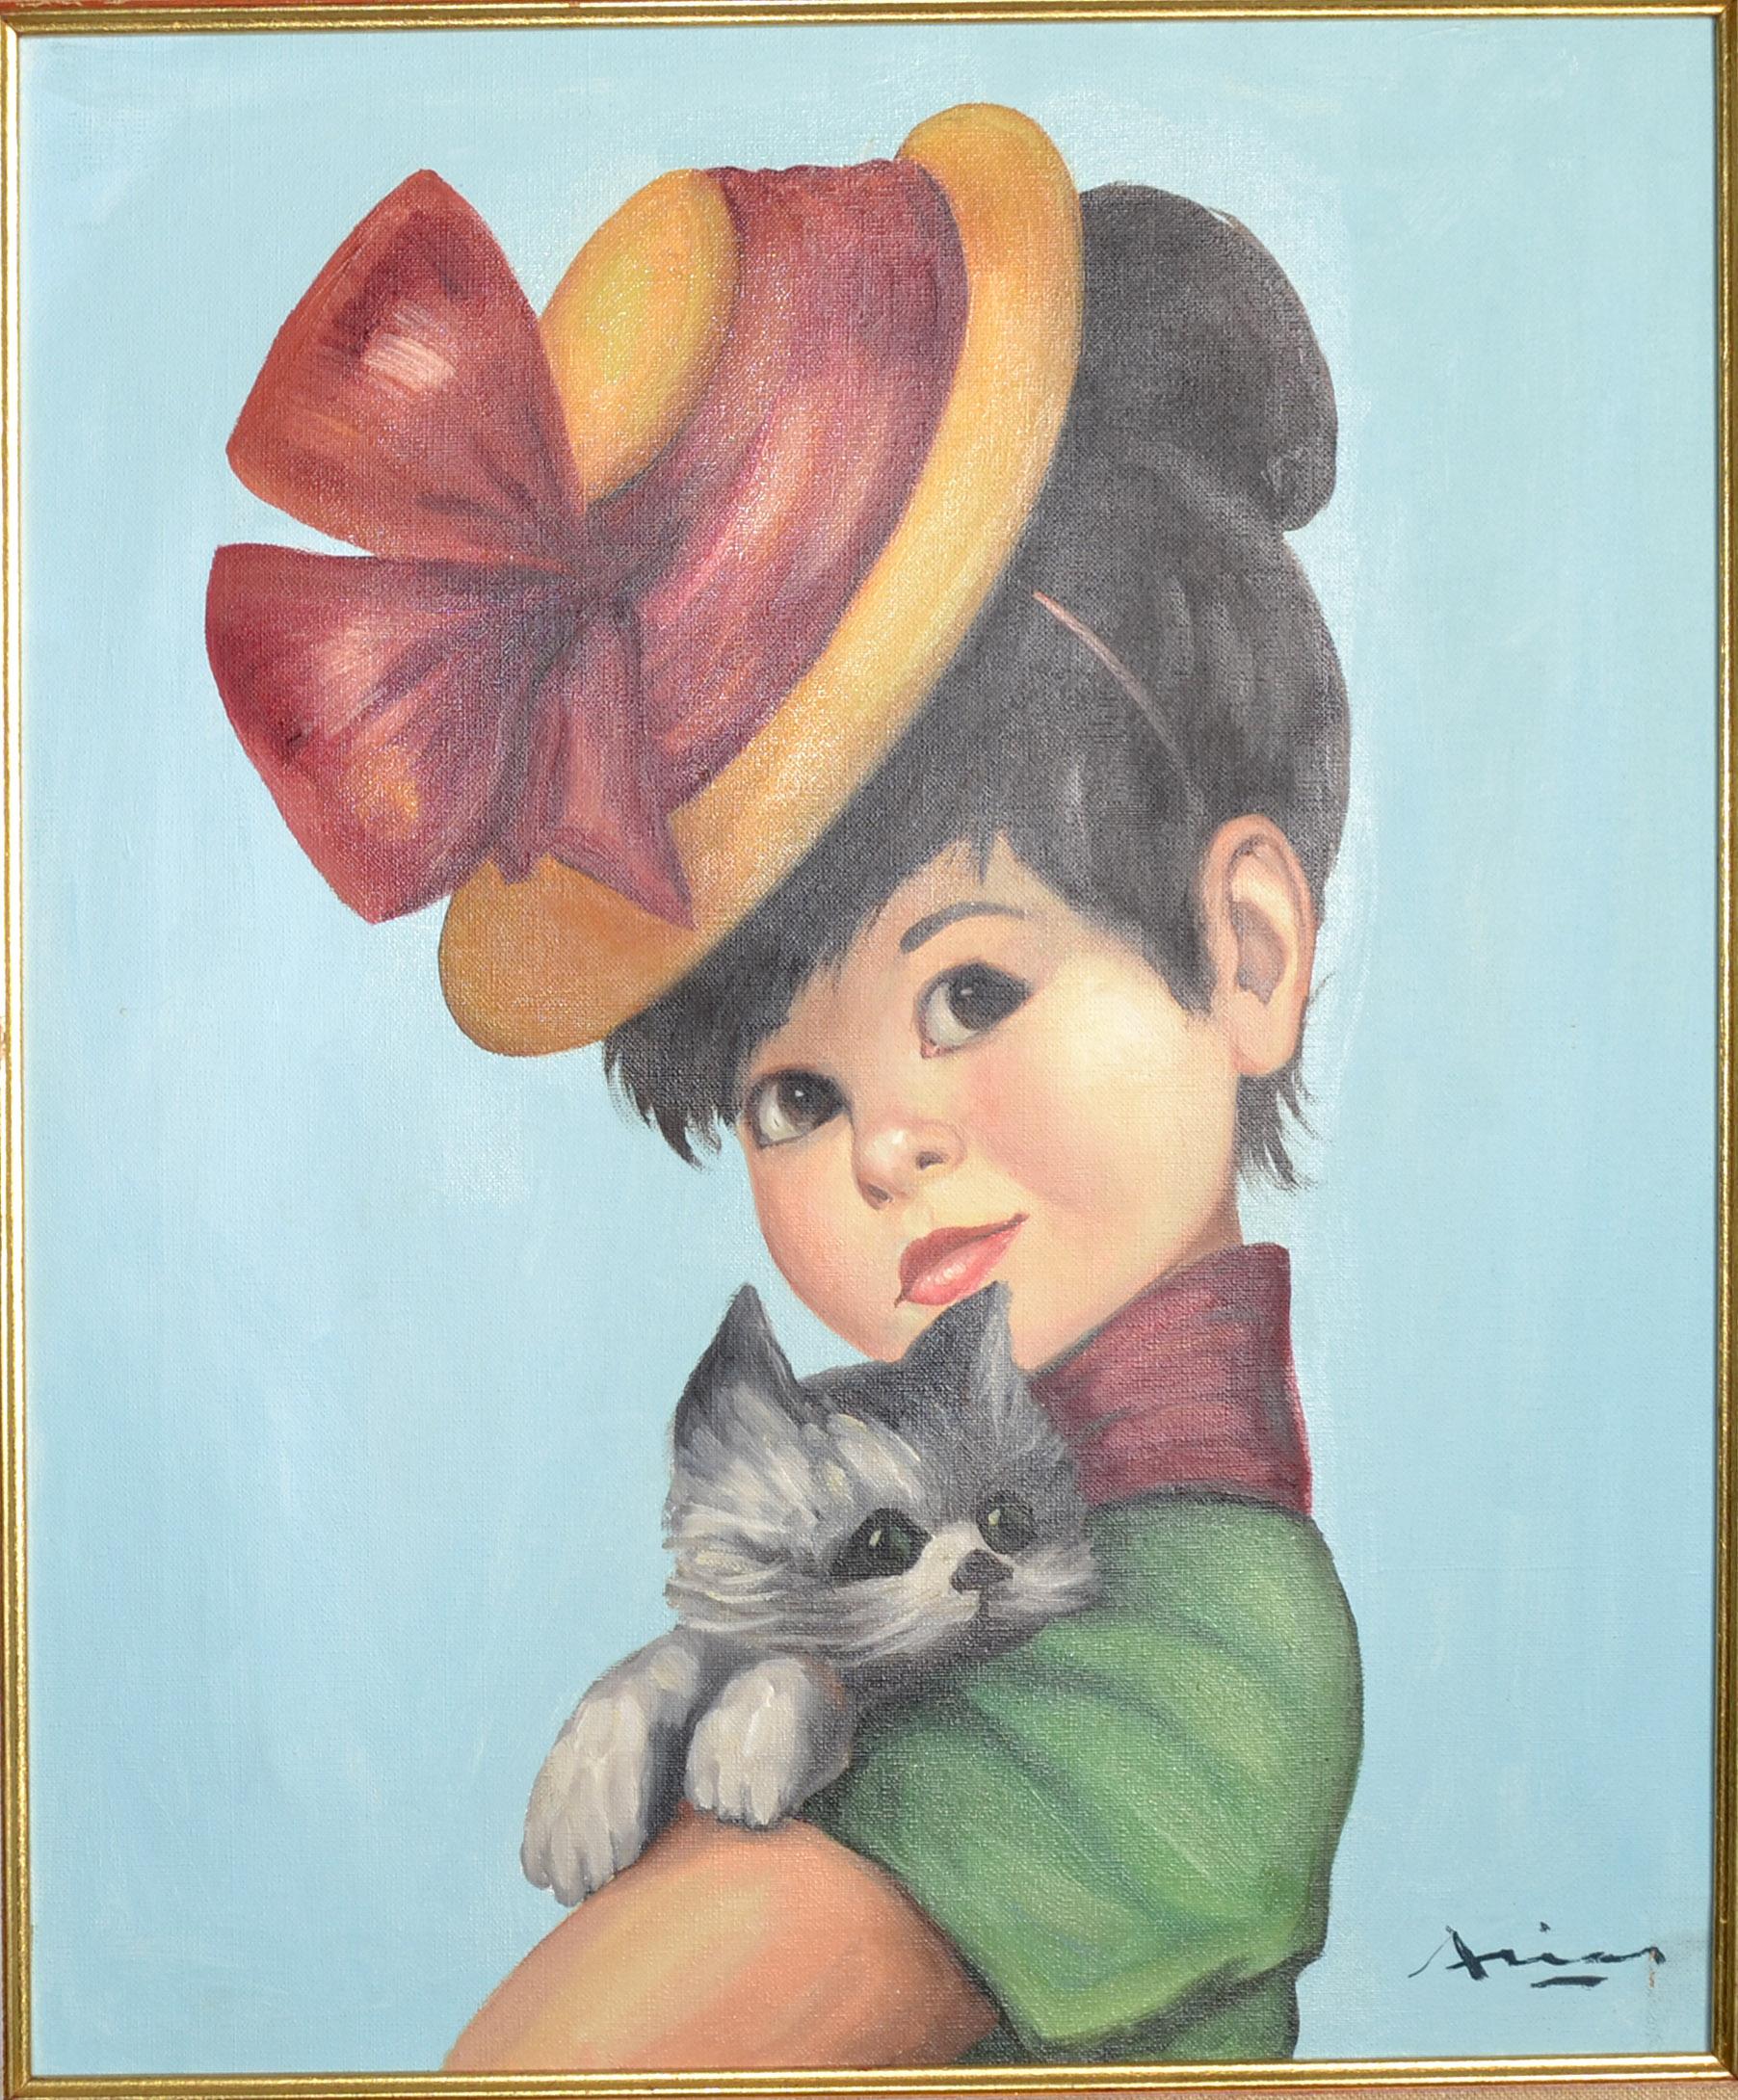 Peinture acrylique figurative sur toile, signée et gravée à la main à la feuille d'or, de style Régence, représentant une Espagnole aux cheveux noirs portant un chapeau d'été, aux yeux noirs, tenant son chat gris.
Fabriqué en Espagne vers 1970